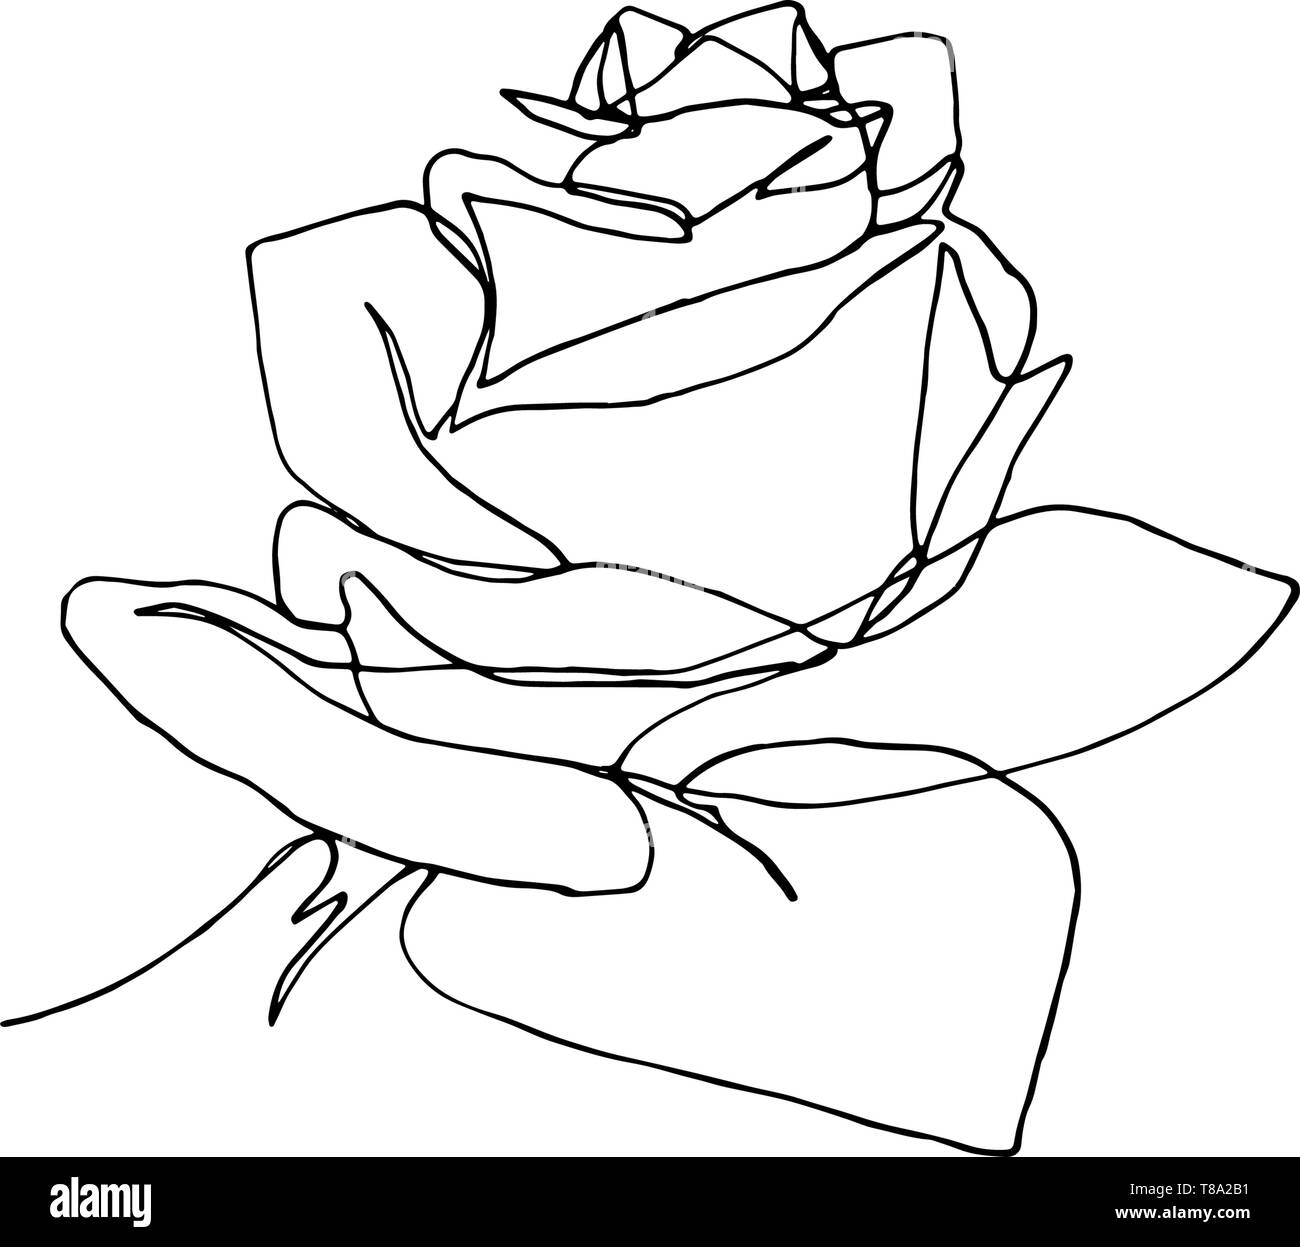 Fleur Rose A La Main Une Seule Ligne De Dessin Image Vectorielle Stock Alamy